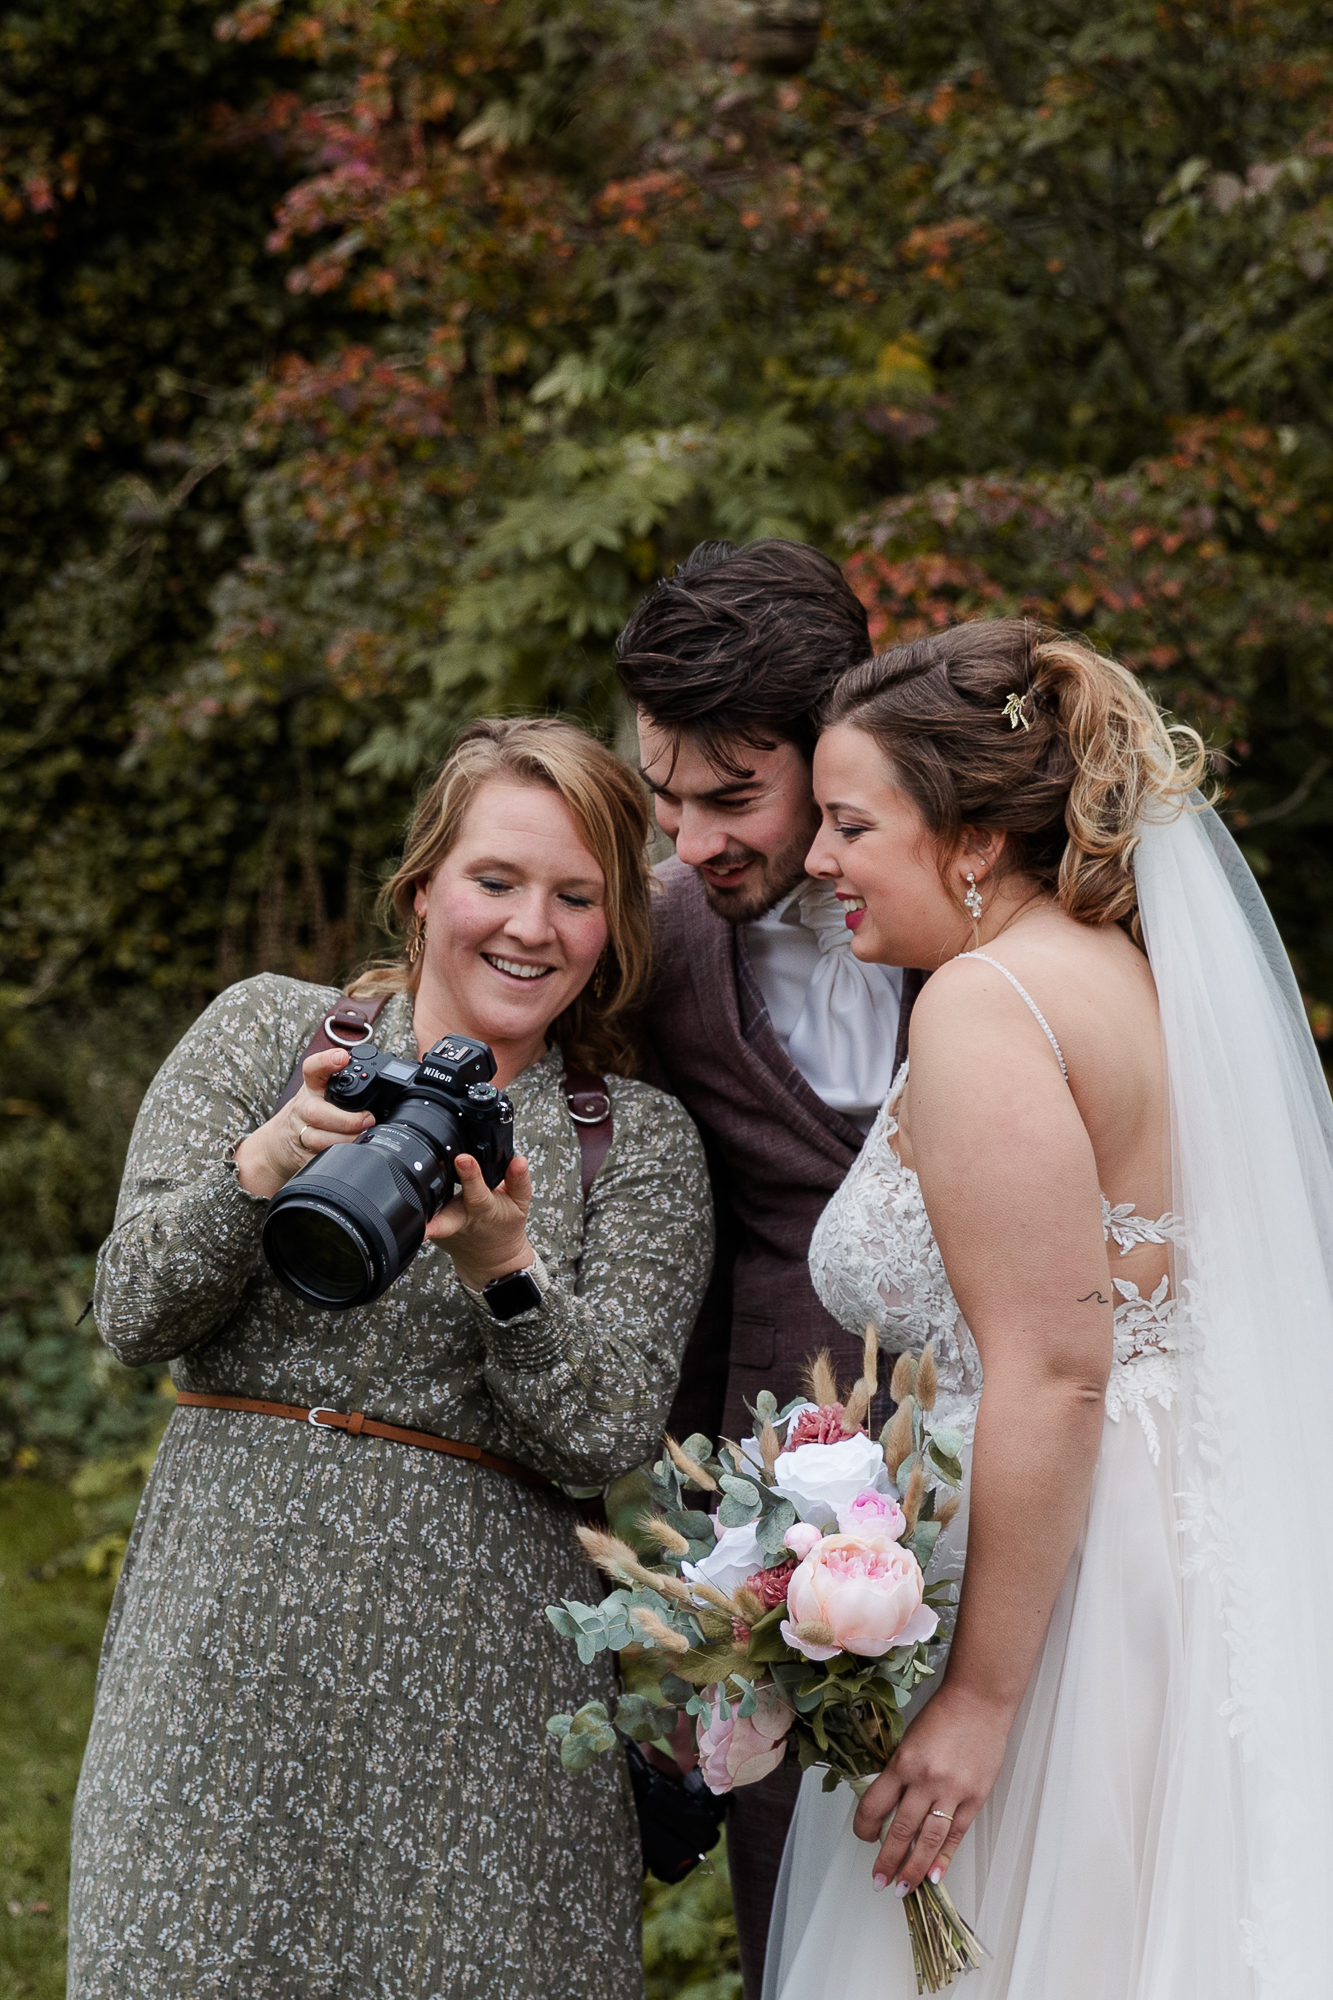 Bruidsfotograaf laat lachend het resultaat van een foto zien aan een bruidspaar.